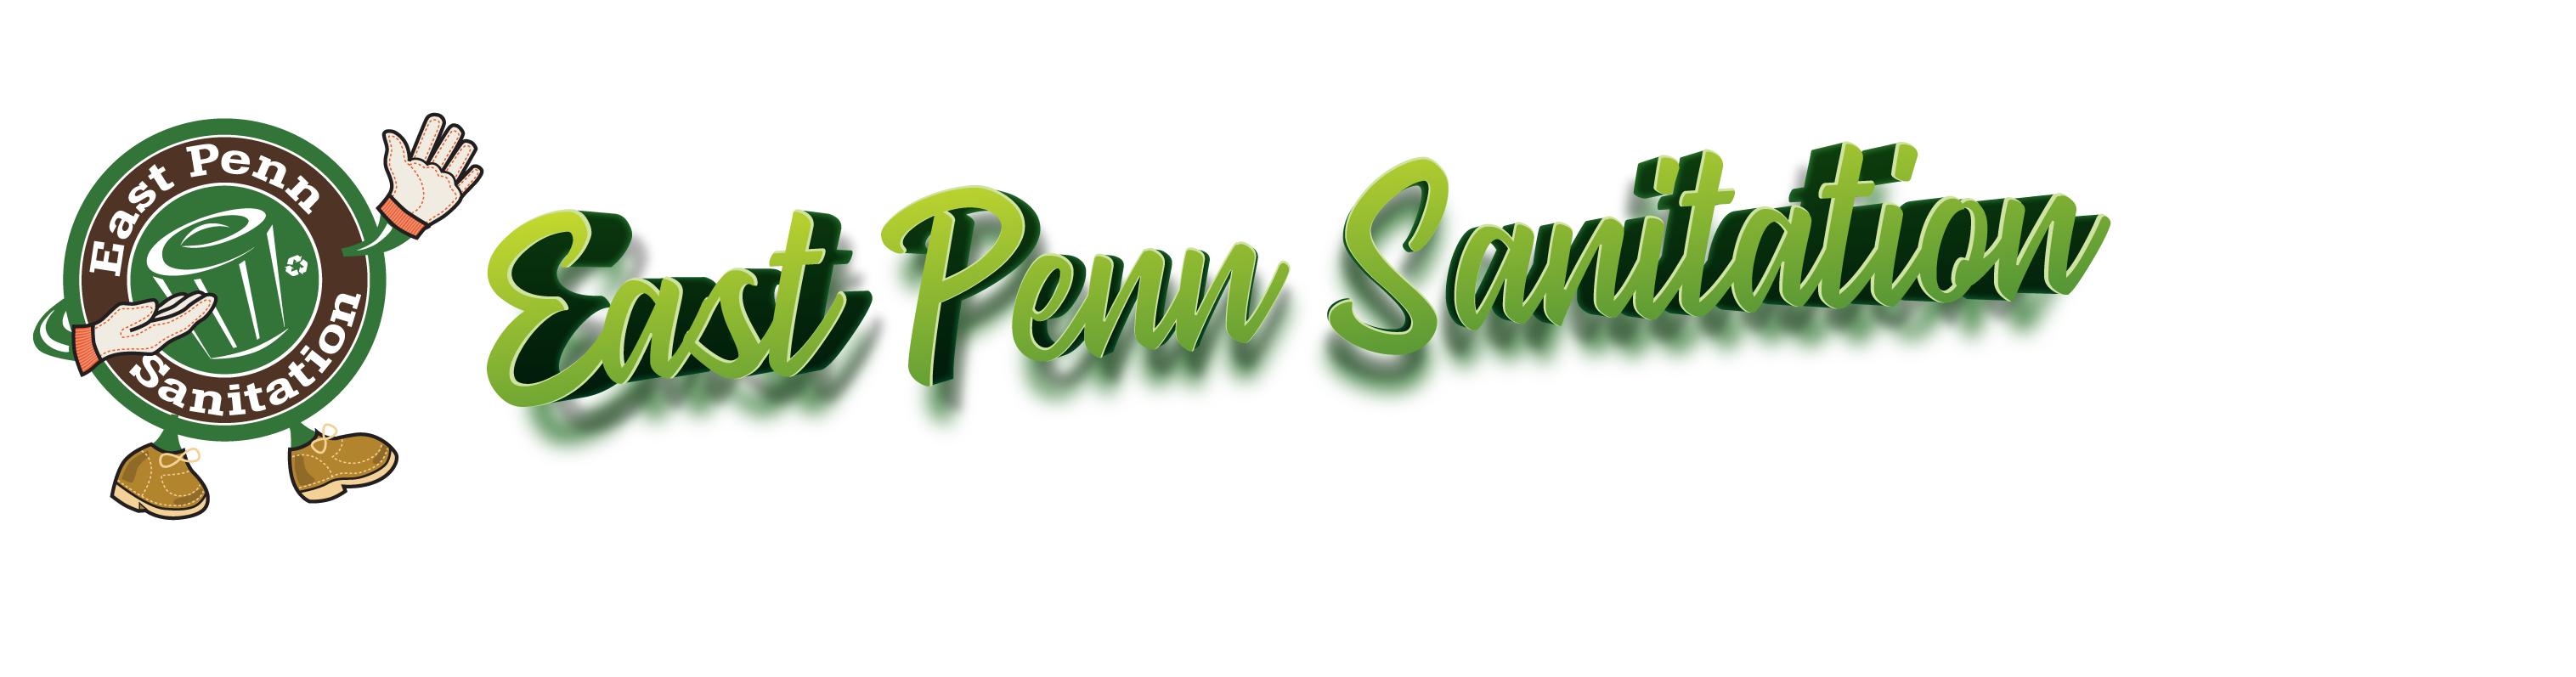 East Penn Sanitation Logo